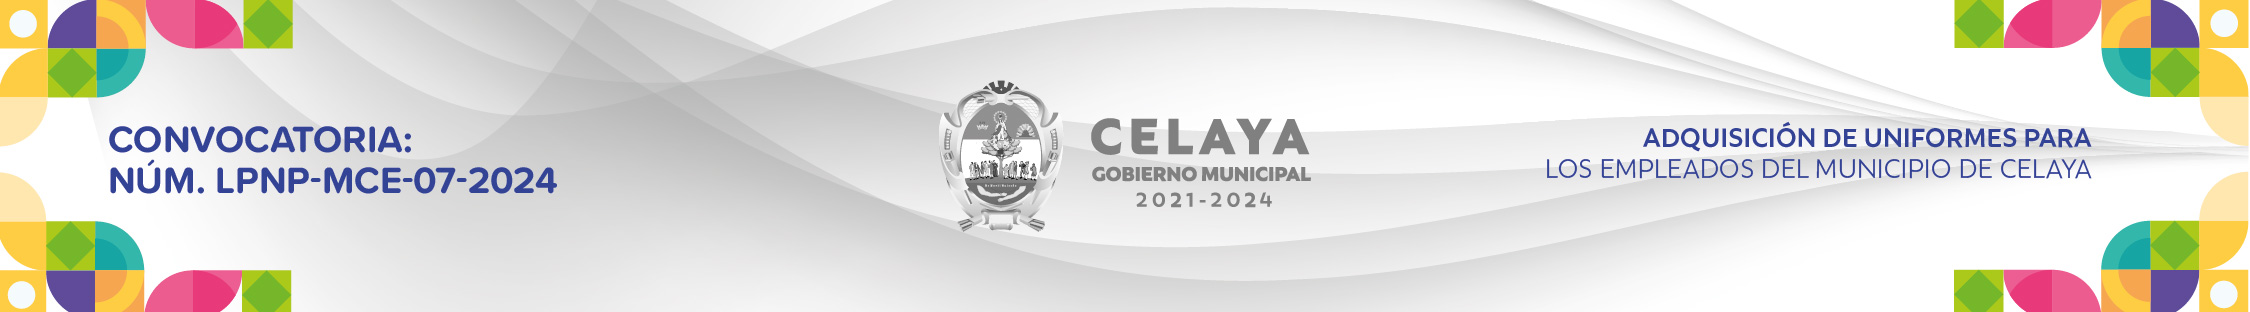 CONVOCATORIA: NÚM. LPNP-MCE-07-2024: ADQUISICIÓN DE UNIFORMES PARA LOS EMPLEADOS DEL MUNICIPIO DE CELAYA